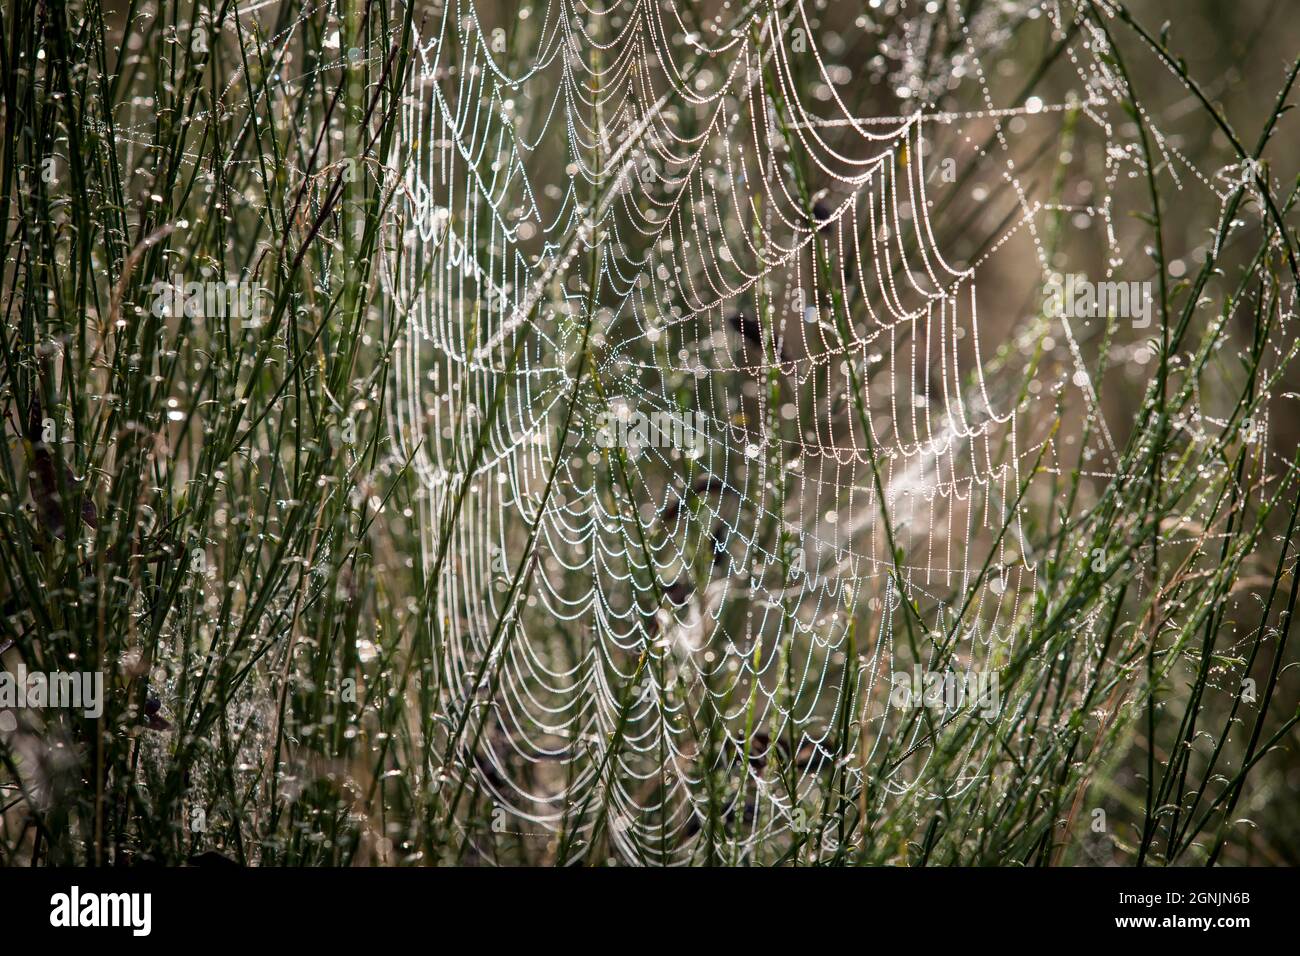 Una tela de araña con gotas de rocío en el Wahner Heath, Colonia, Renania del Norte-Westfalia, Alemania. Spinnennetz mit Tautropfen in der Wahner Heide, Colonia, Foto de stock